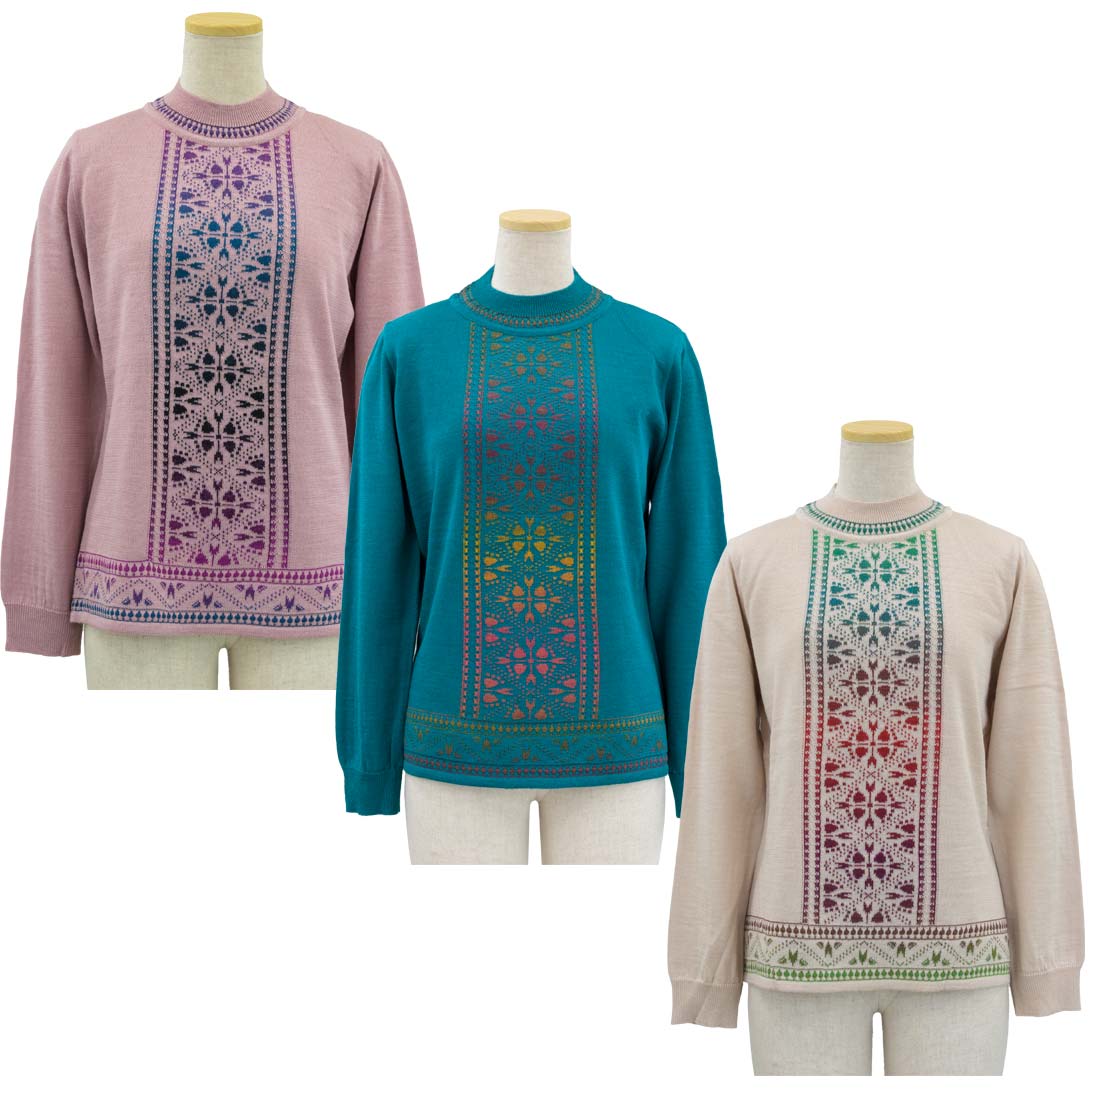 シニア 婦人 レディース 日本製 レインボー糸 セーター ニット 秋冬 シニアファッション 70代 80代 90代